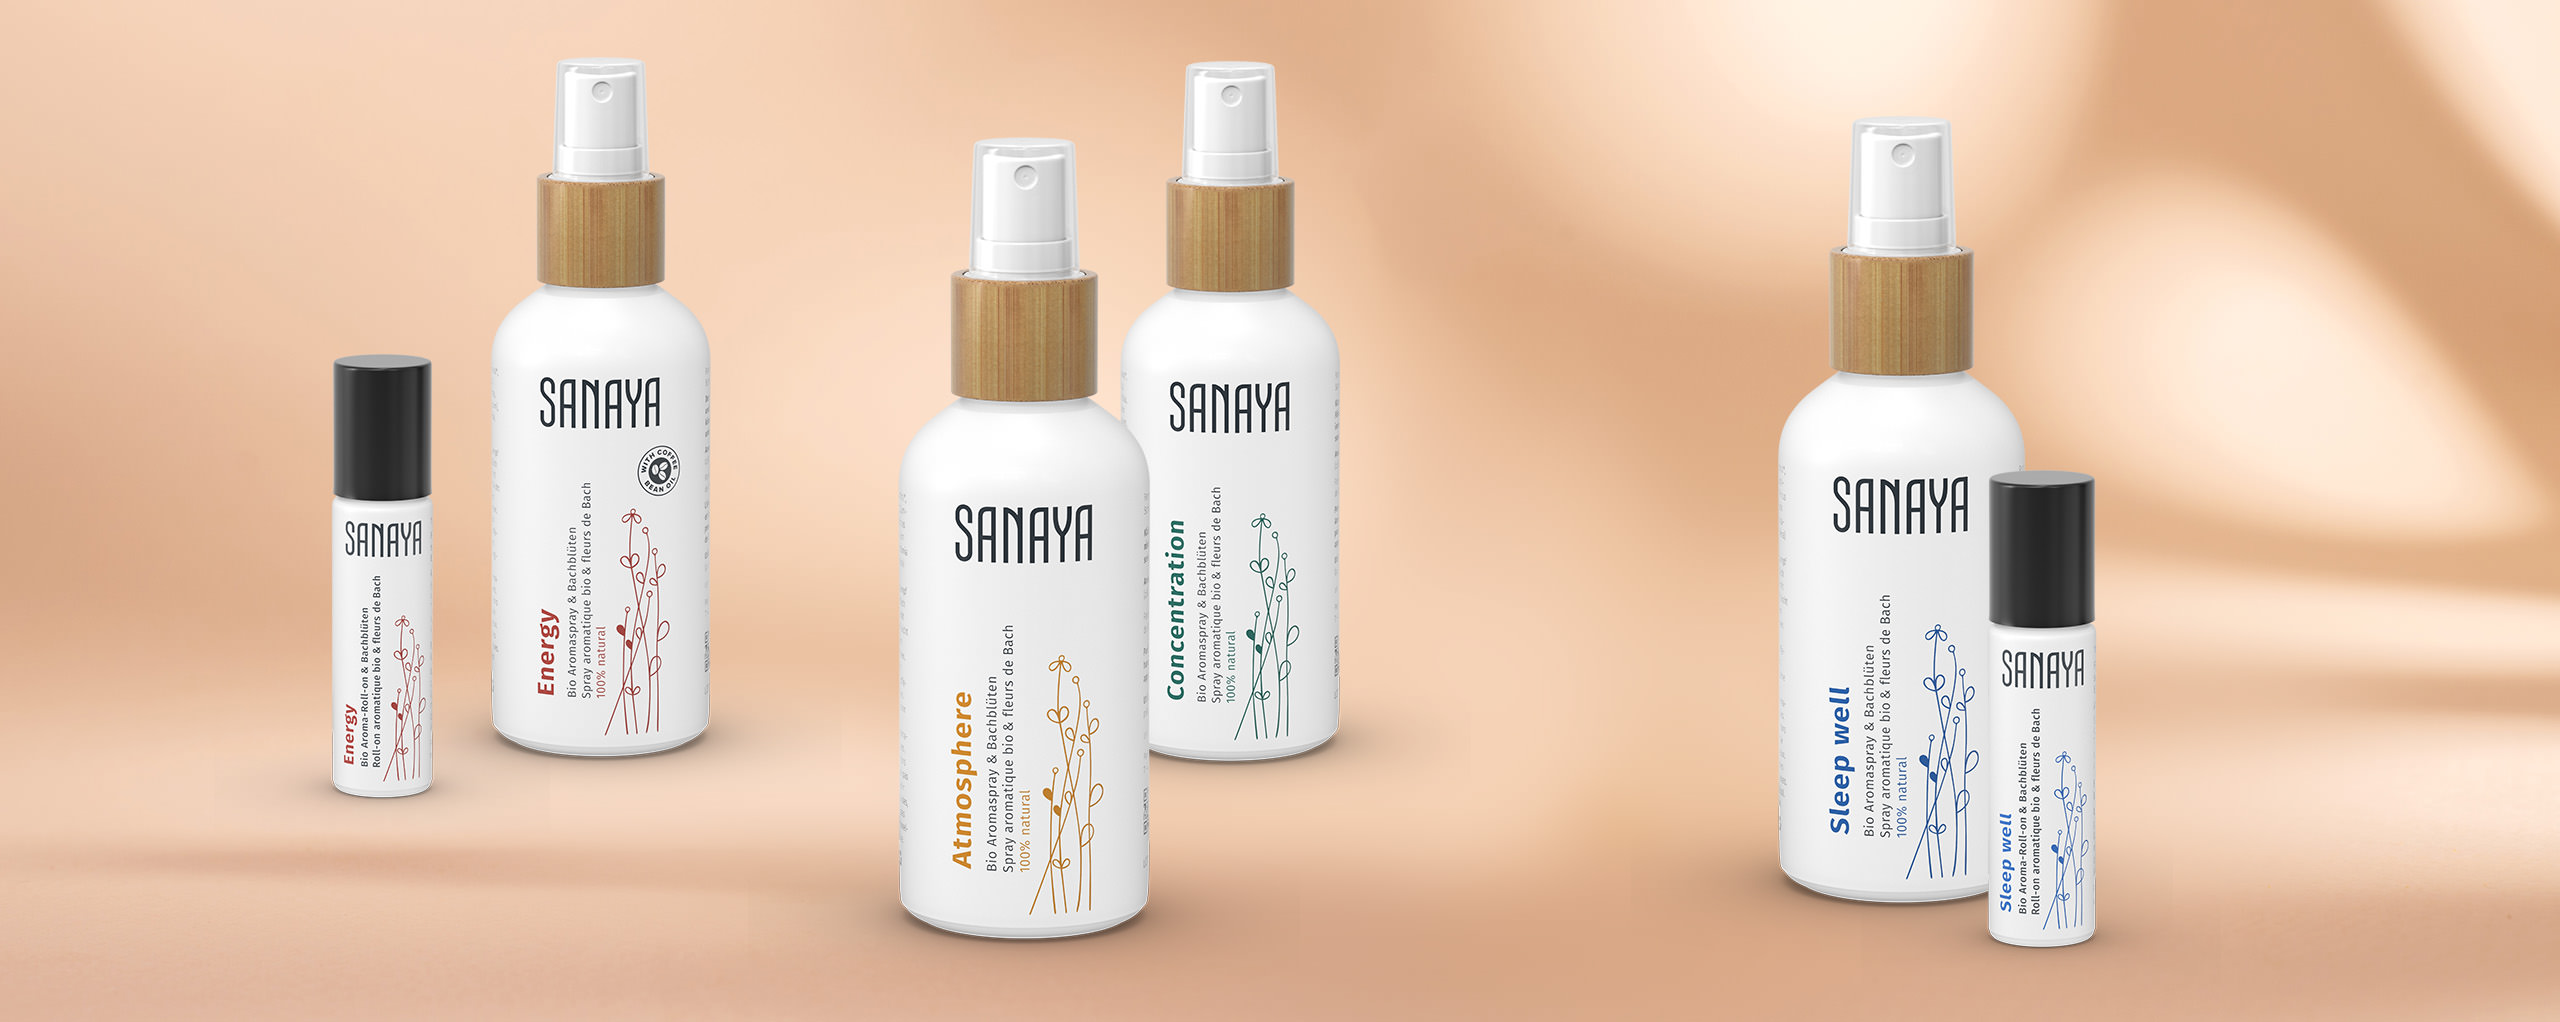 Les produits Sanaya sont exclusivement disponibles en Suisse